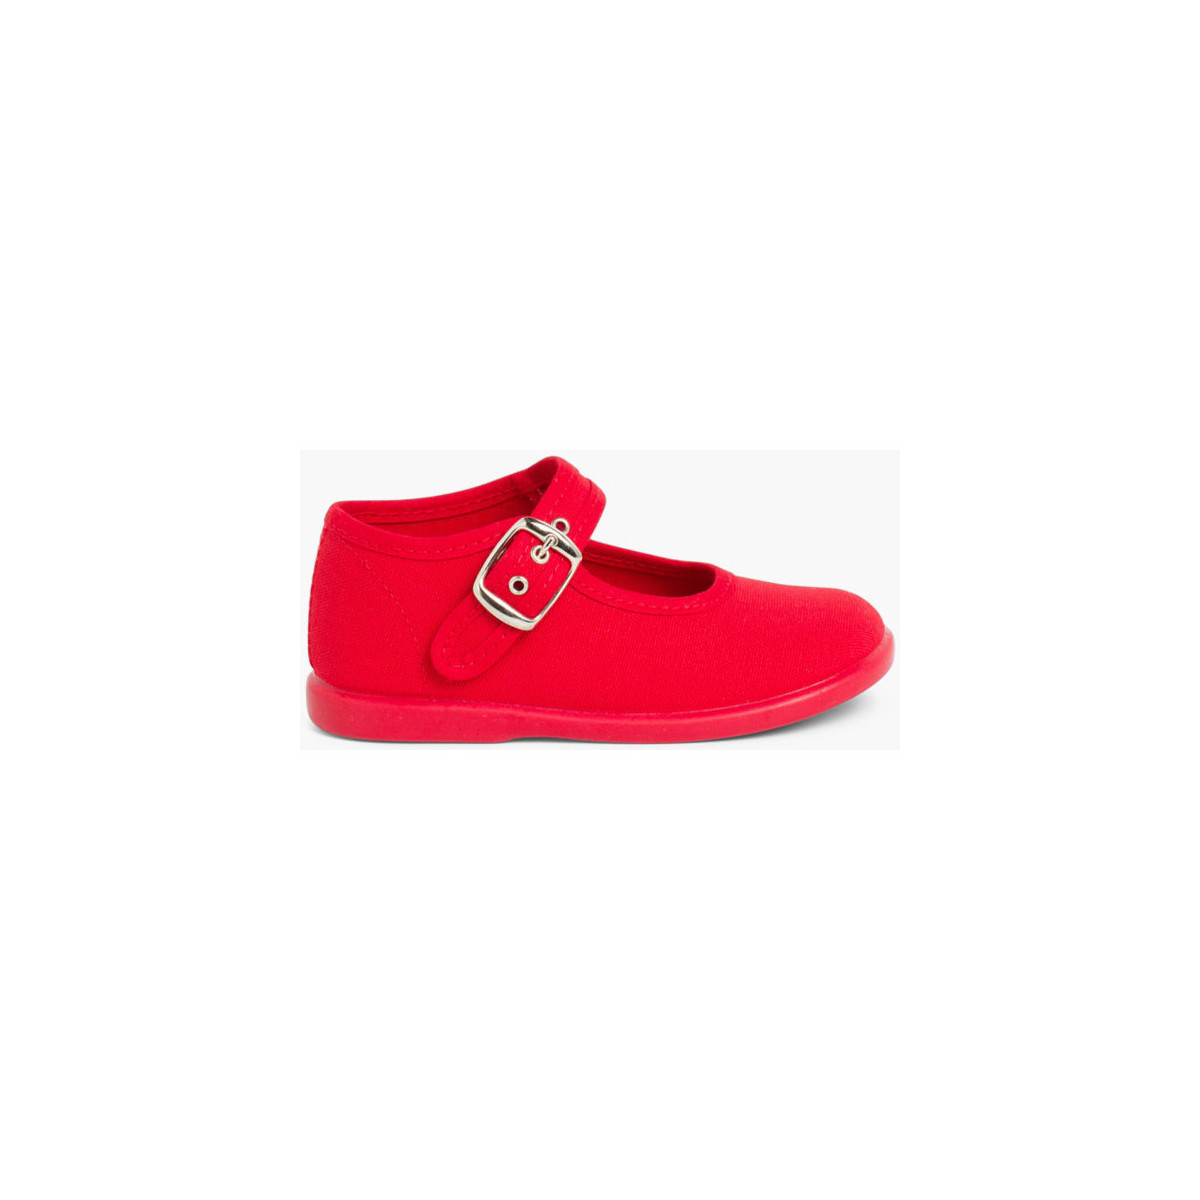 Pisamonas Rouge Chaussures en Toile avec Fermeture à bo